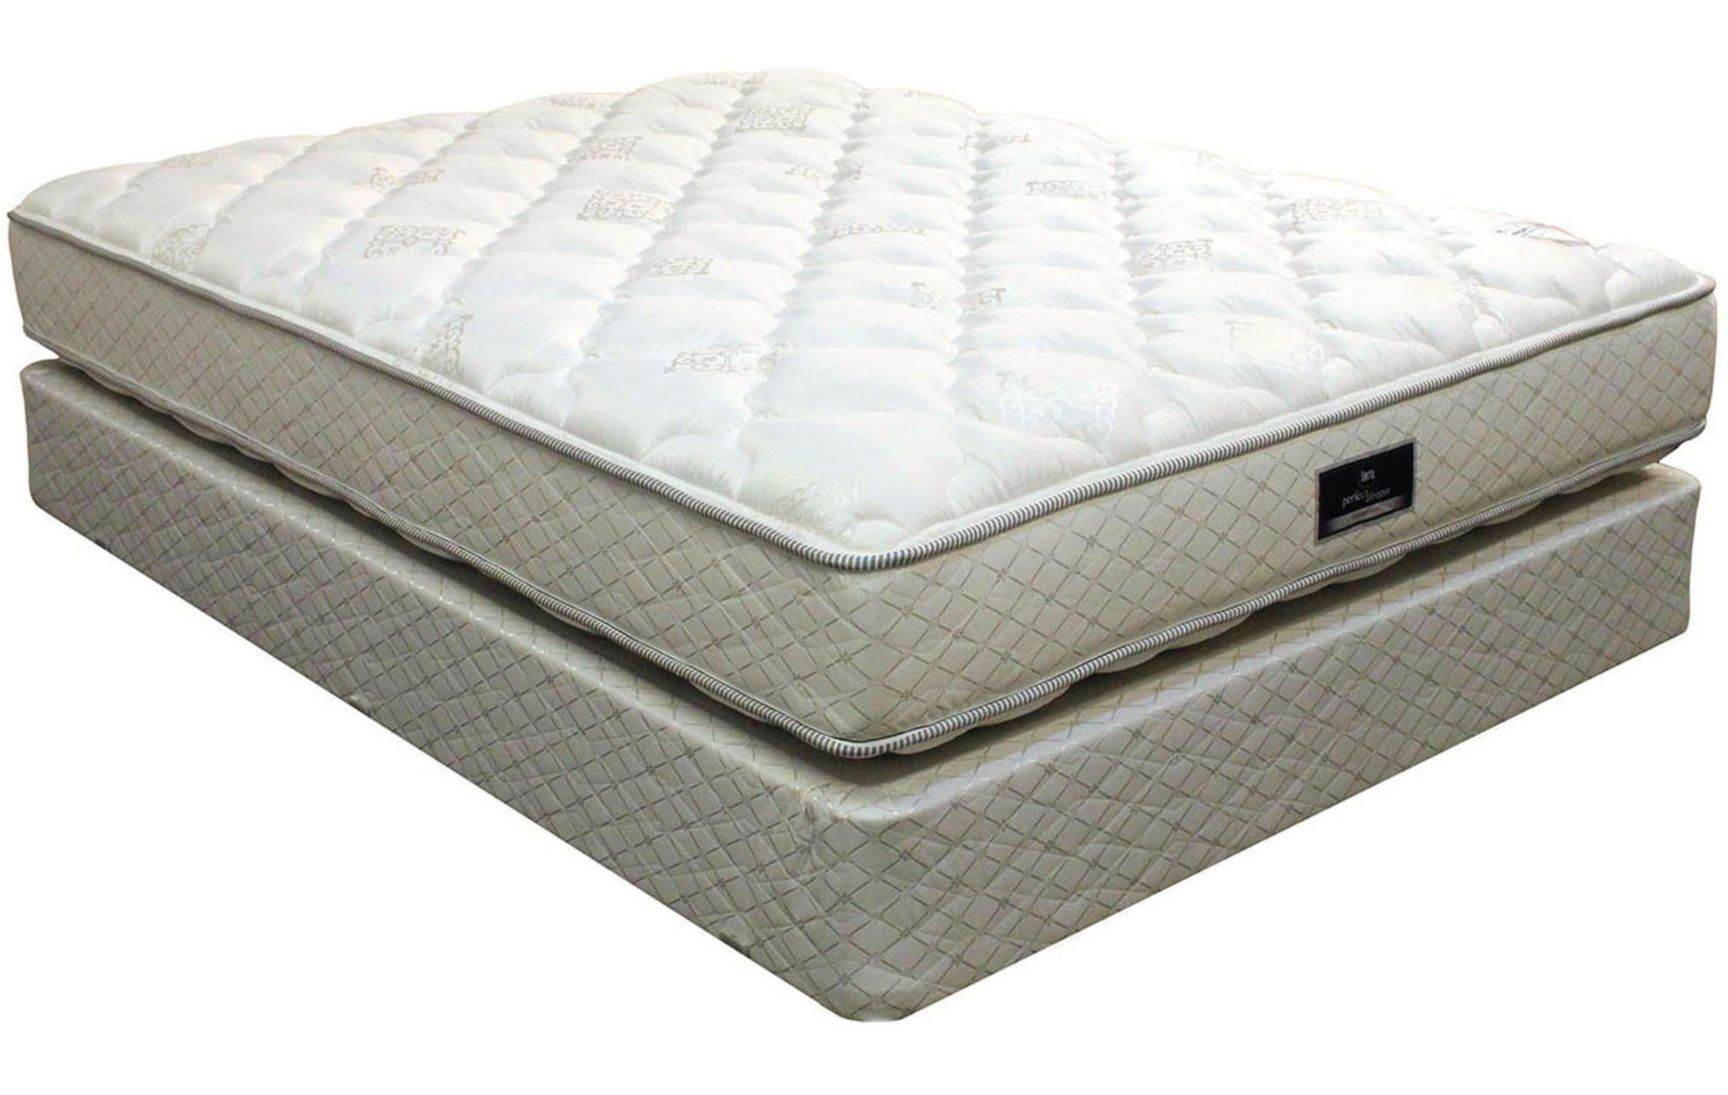 Pillow Tops Mattress Serta Perfect Sleeper Sapphire Suite Queen Serta P...